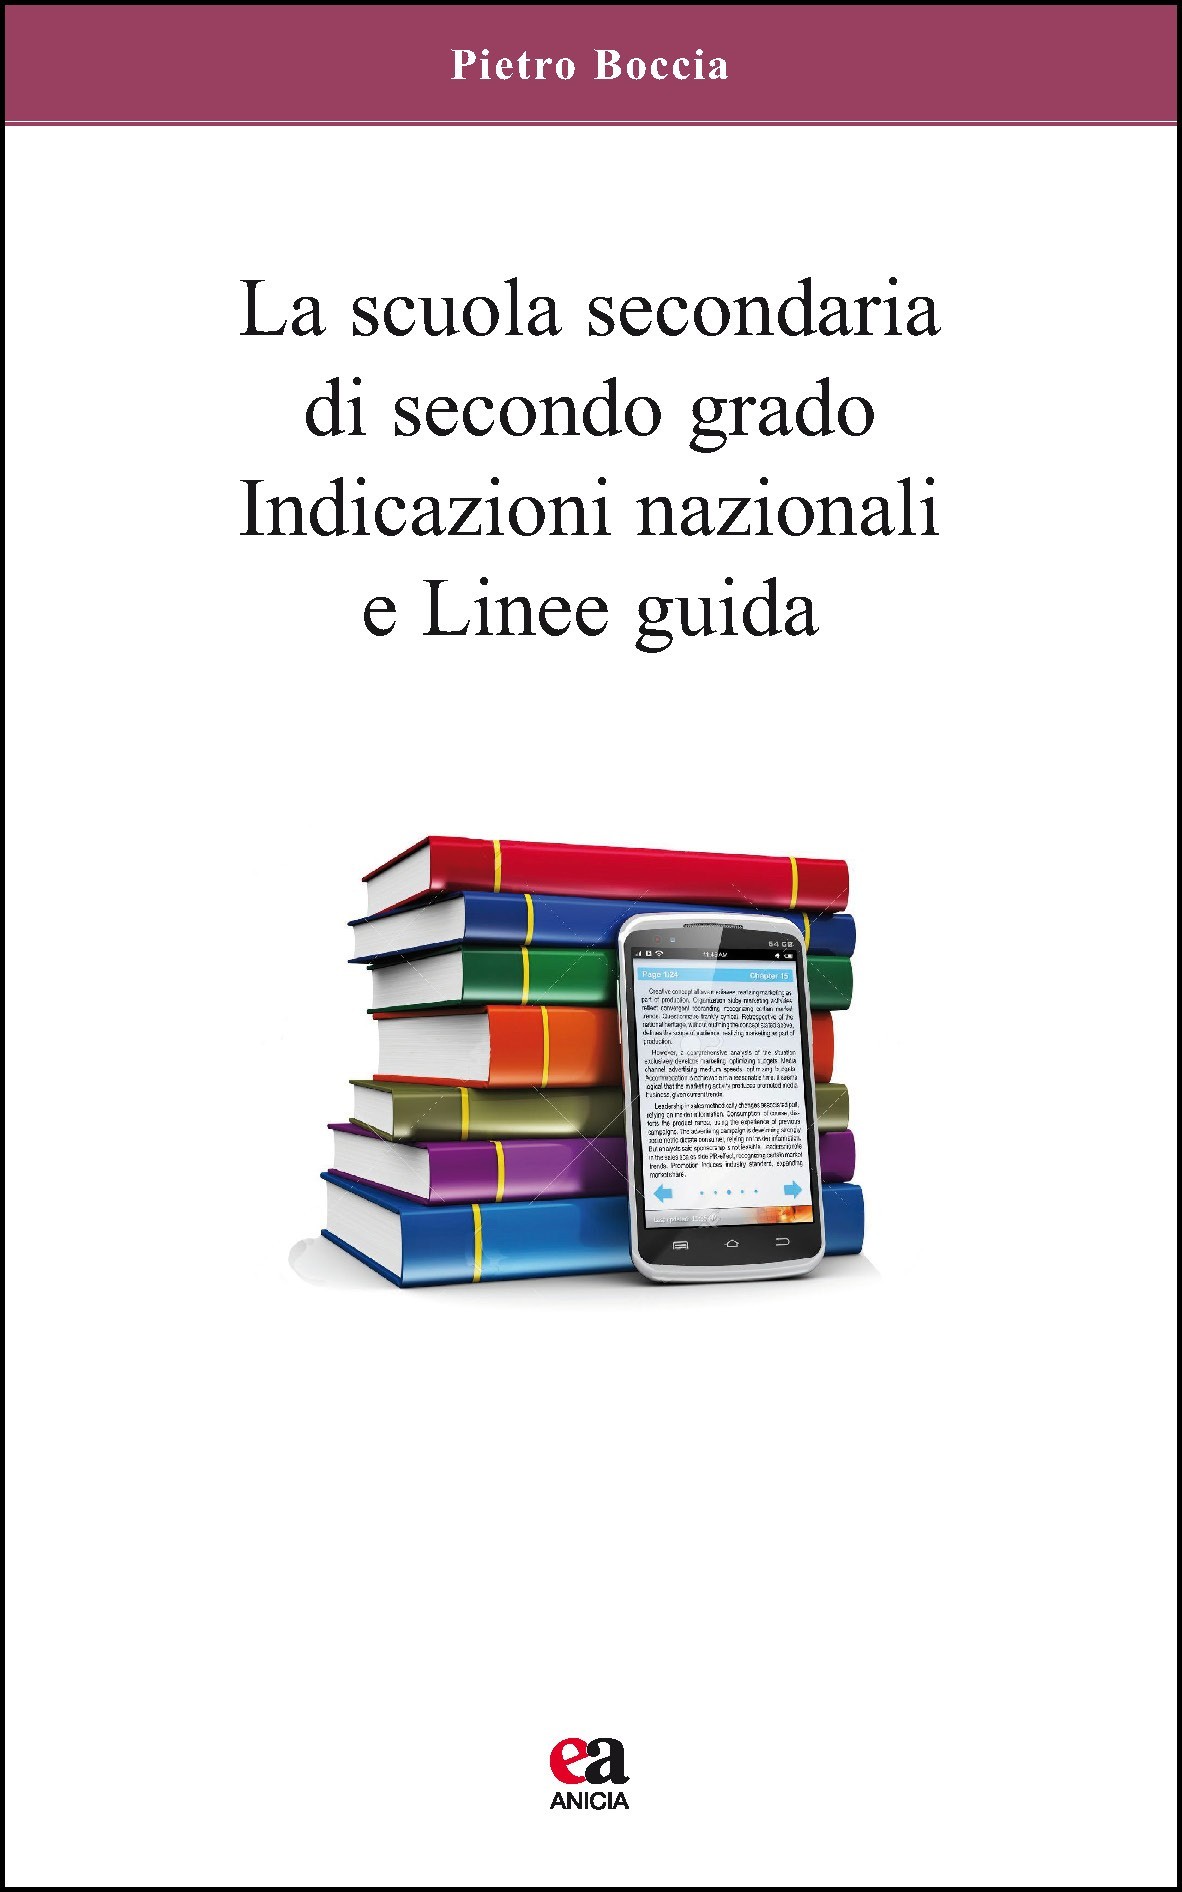 https://www.edizionianicia.it/wp-content/uploads/2015/07/p_5_1_1_511-La-scuola-secondaria-di-secondo-grado-Indicazioni-nazionali-e-linee-guida.jpg